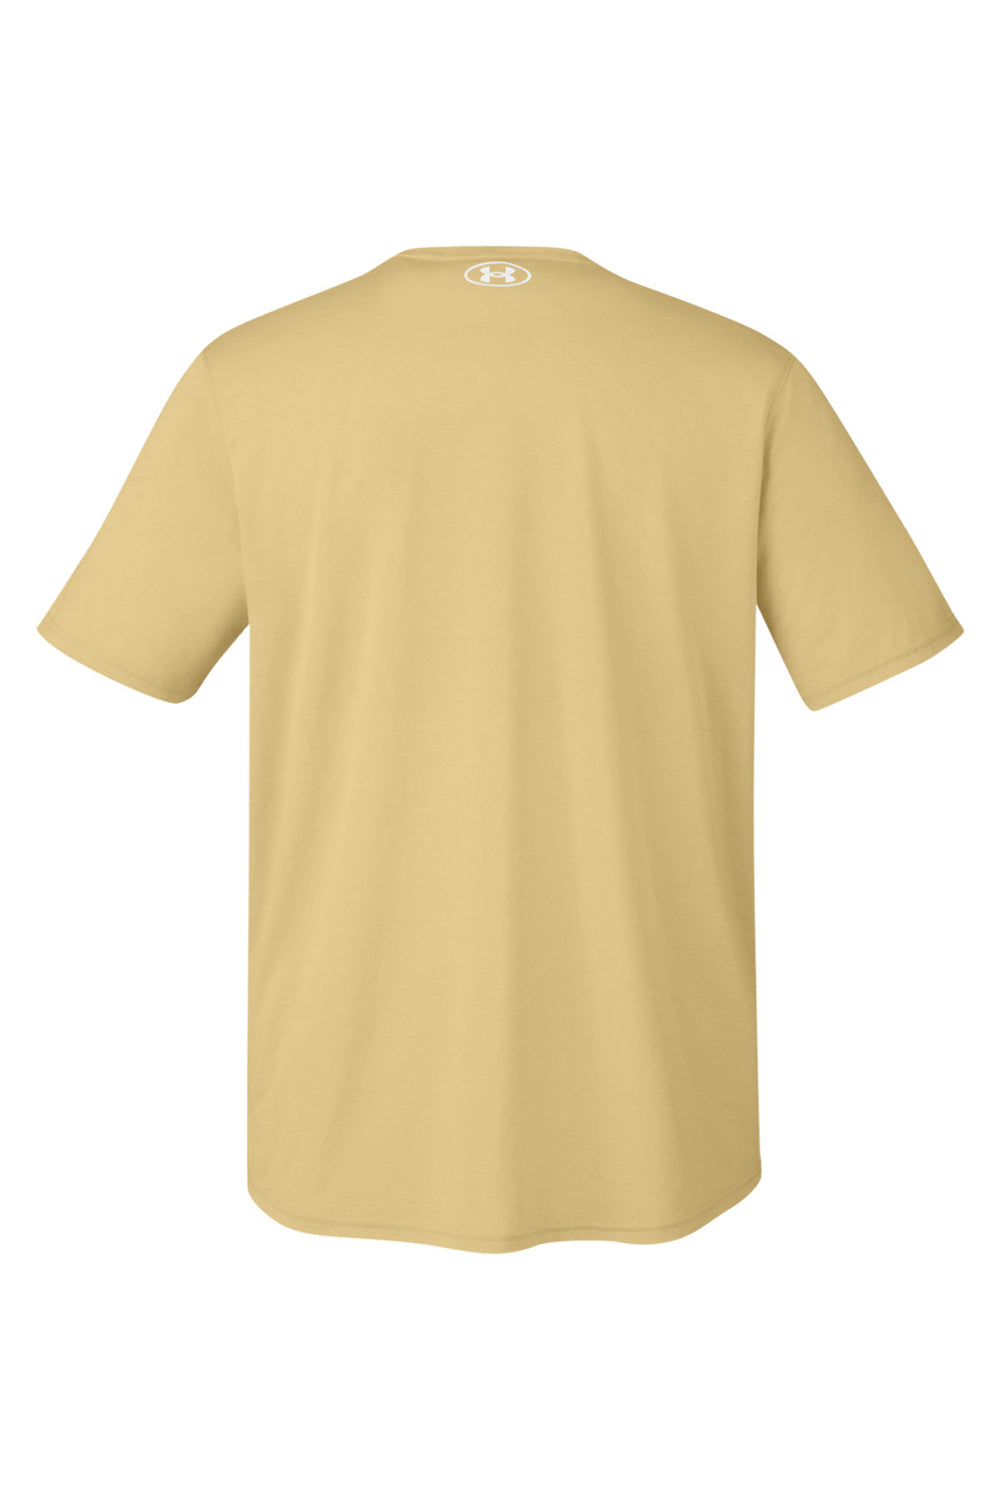 Under Armour 1376842 Mens Team Tech Moisture Wicking Short Sleeve Crewneck T-Shirt Vegas Gold Flat Back